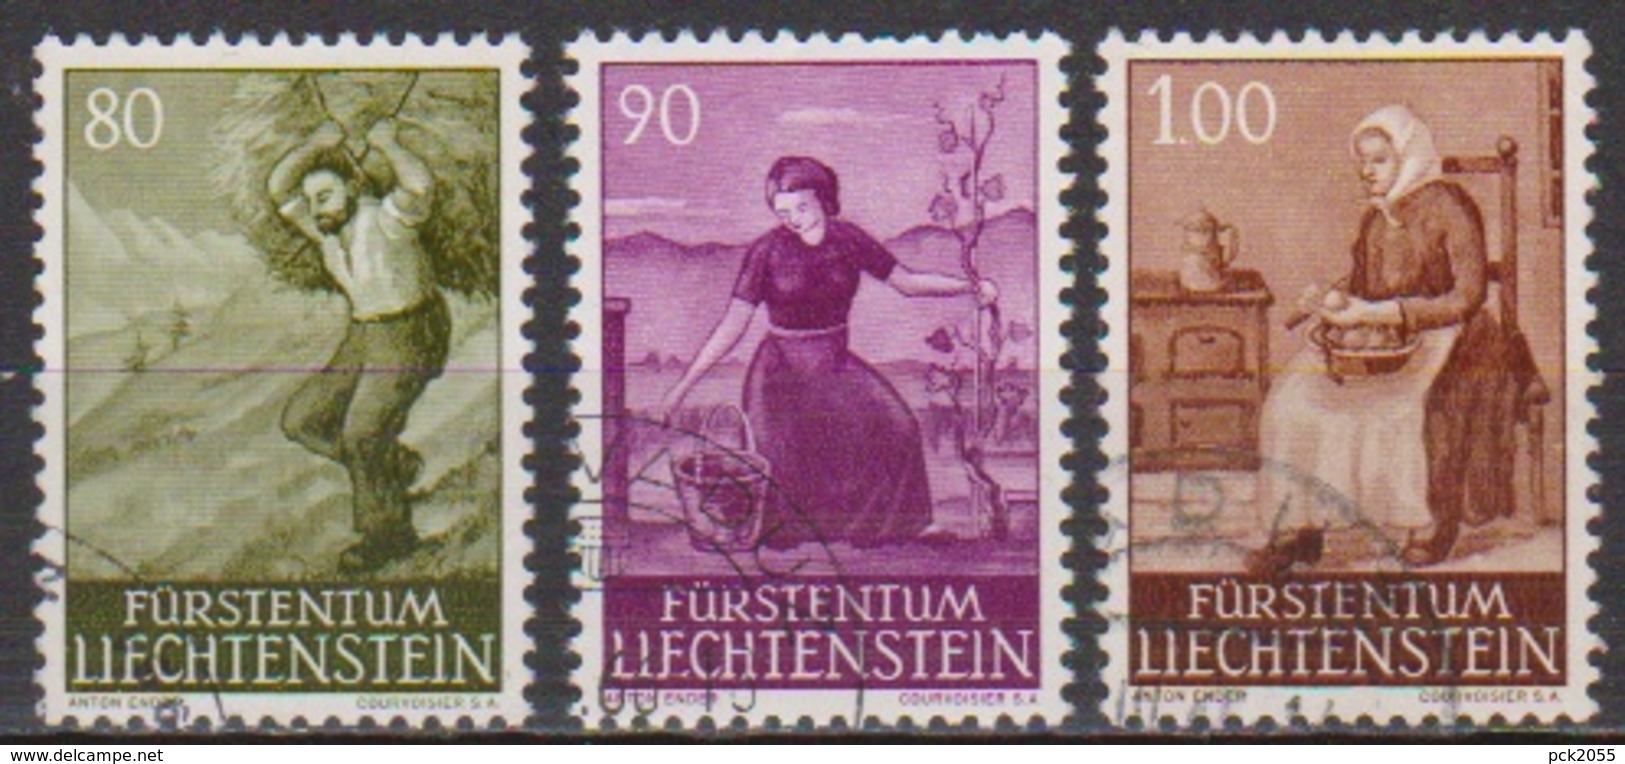 Lichtenstein 1961 MiNr.411- 413 O Gest. Landschaften ( 1452 ) Günstige Versandkosten - Used Stamps